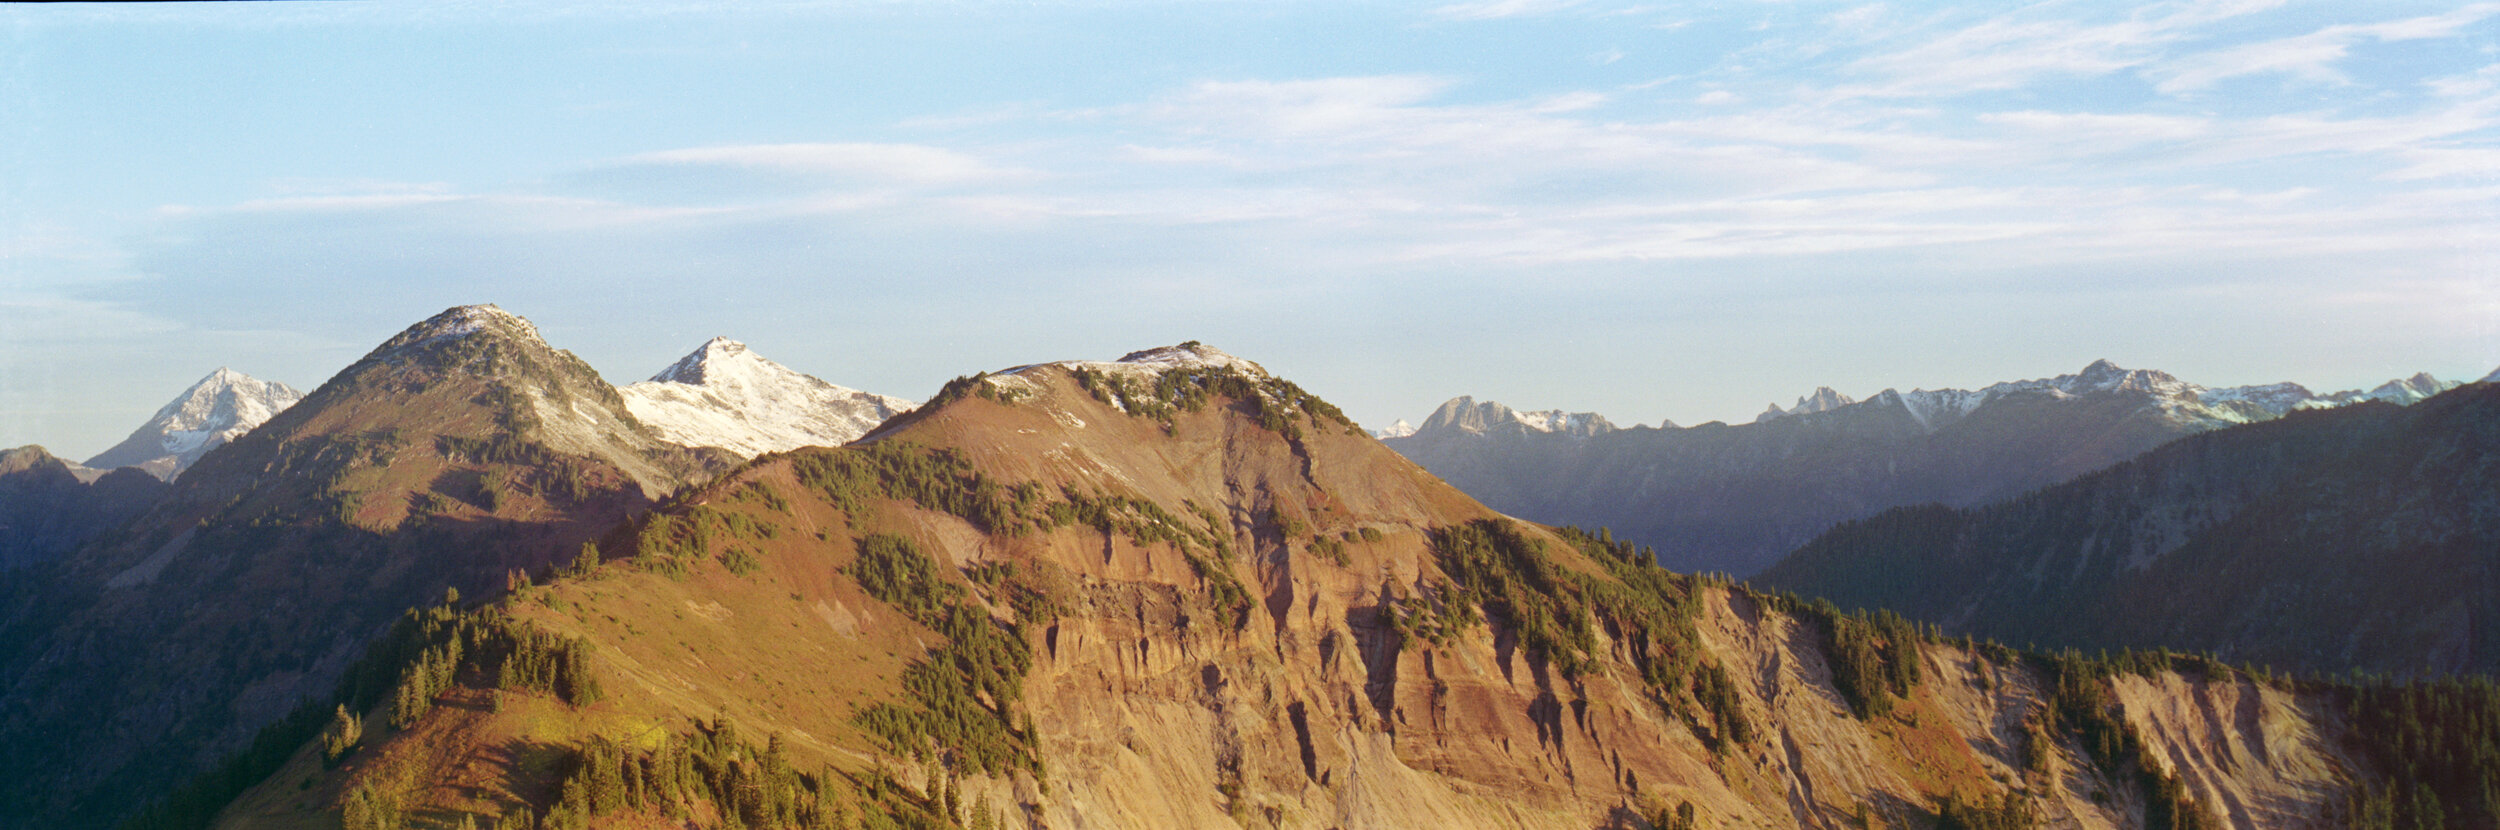  Granite Mountain and Hannegan Peak at sunrise. Kodak Gold 200. 